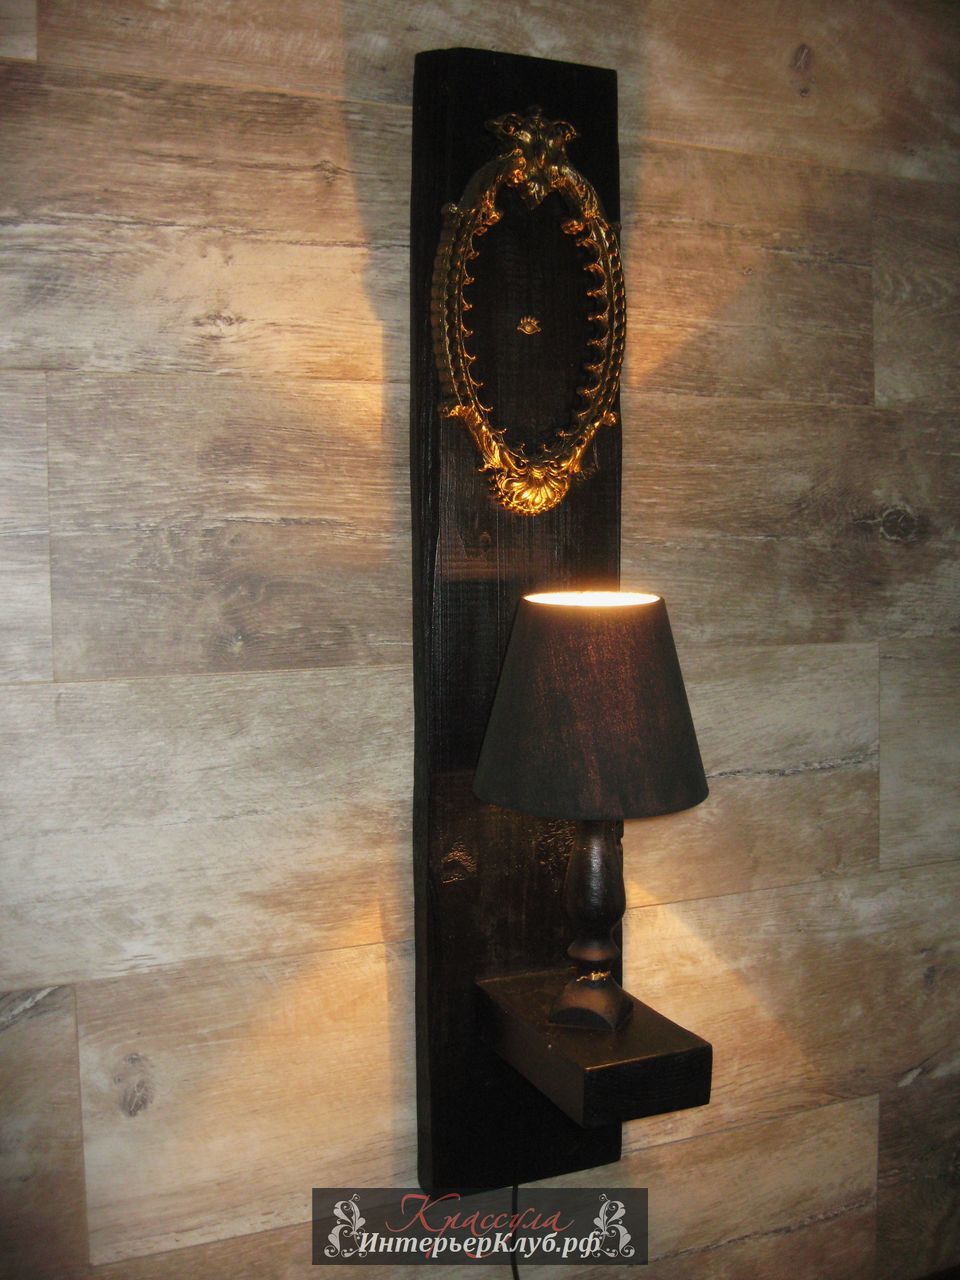 102 Светильник Око - амбарная доска, с элементами декора, цвет черный - золото. Эксклюзивные светильники ручной работы